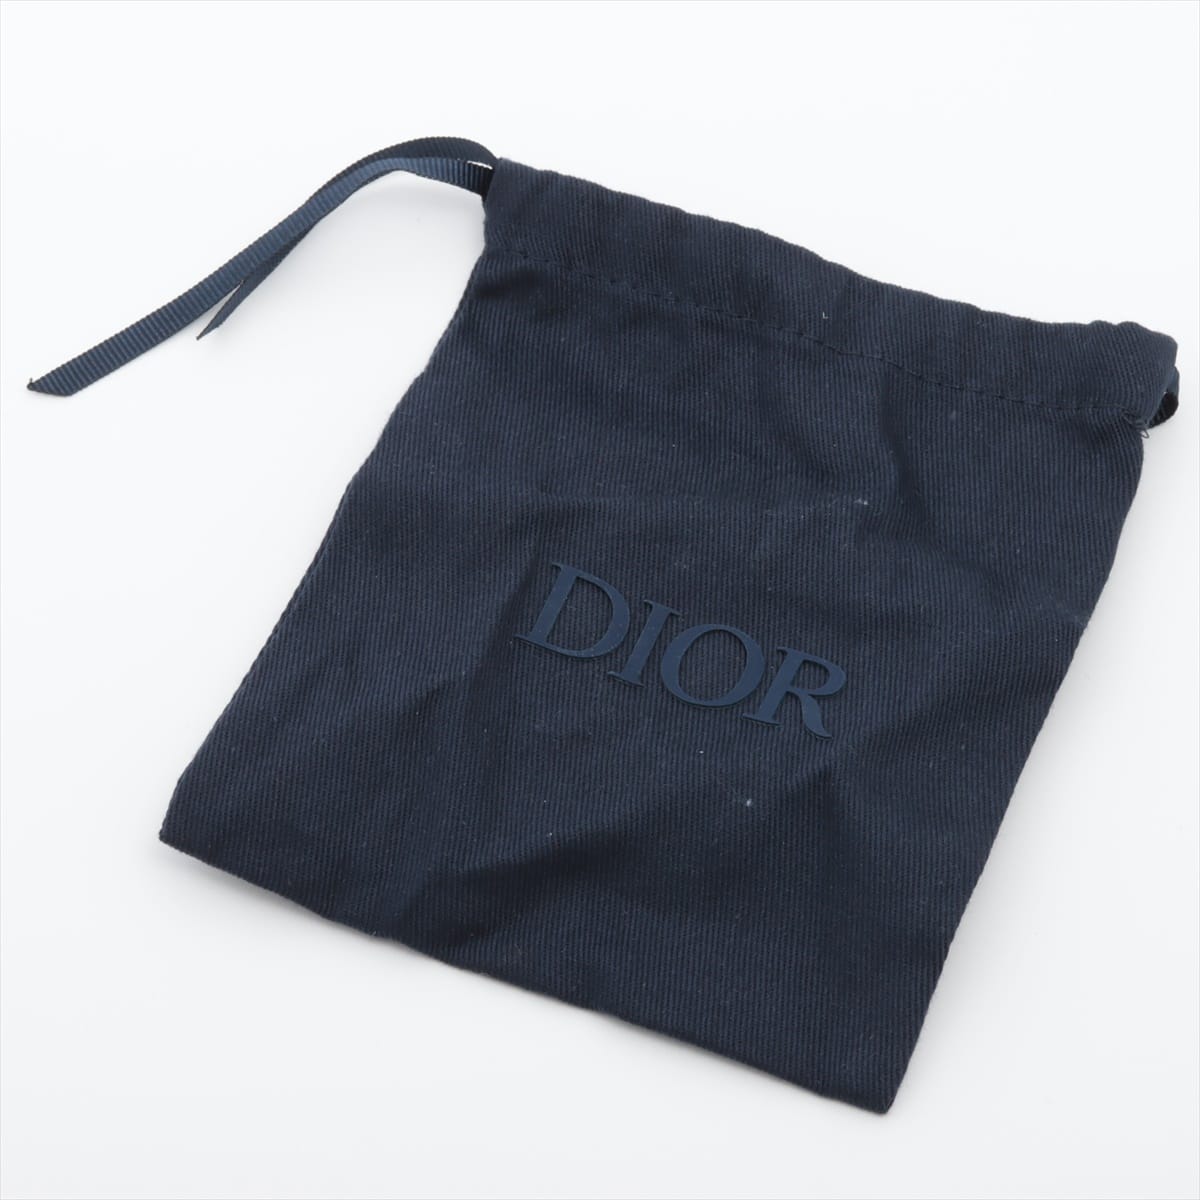 ディオール Dior Tribales ディオール トライバル ピアス(両耳用) GP 